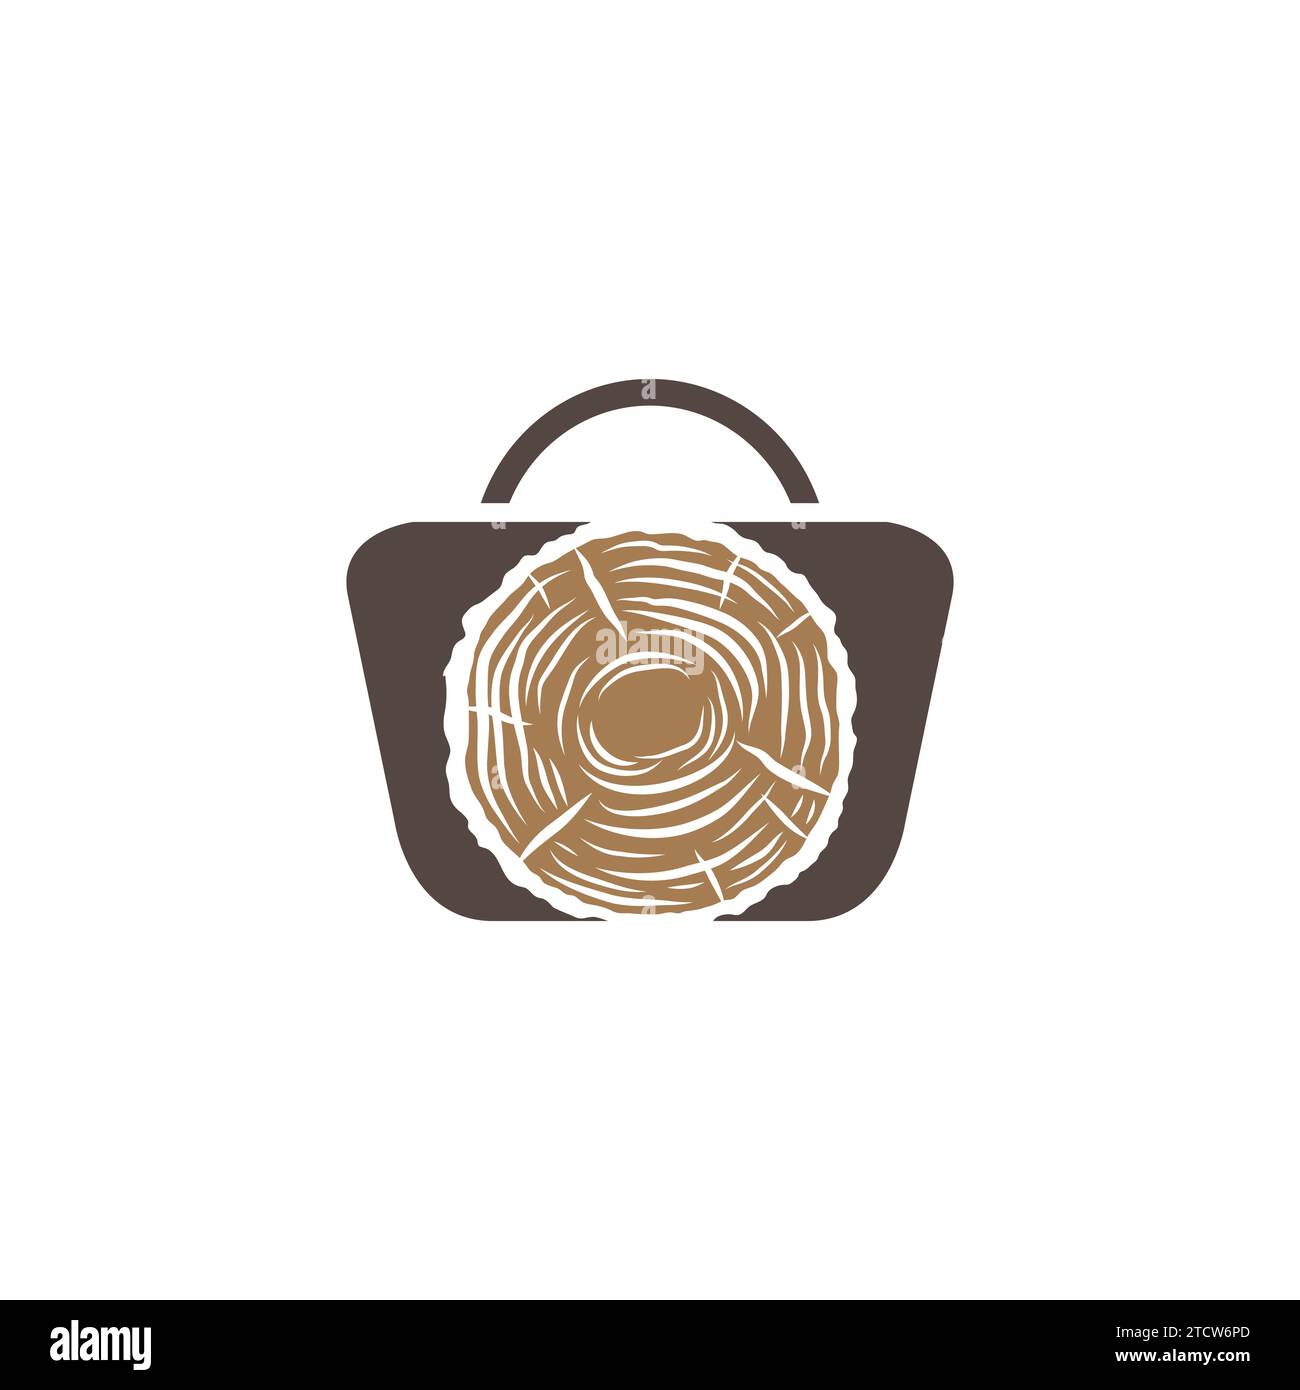 Immagine vettoriale icona in legno del carrello. Negozio al dettaglio o negozio con borsa per la spesa e icona in legno all'interno Illustrazione Vettoriale